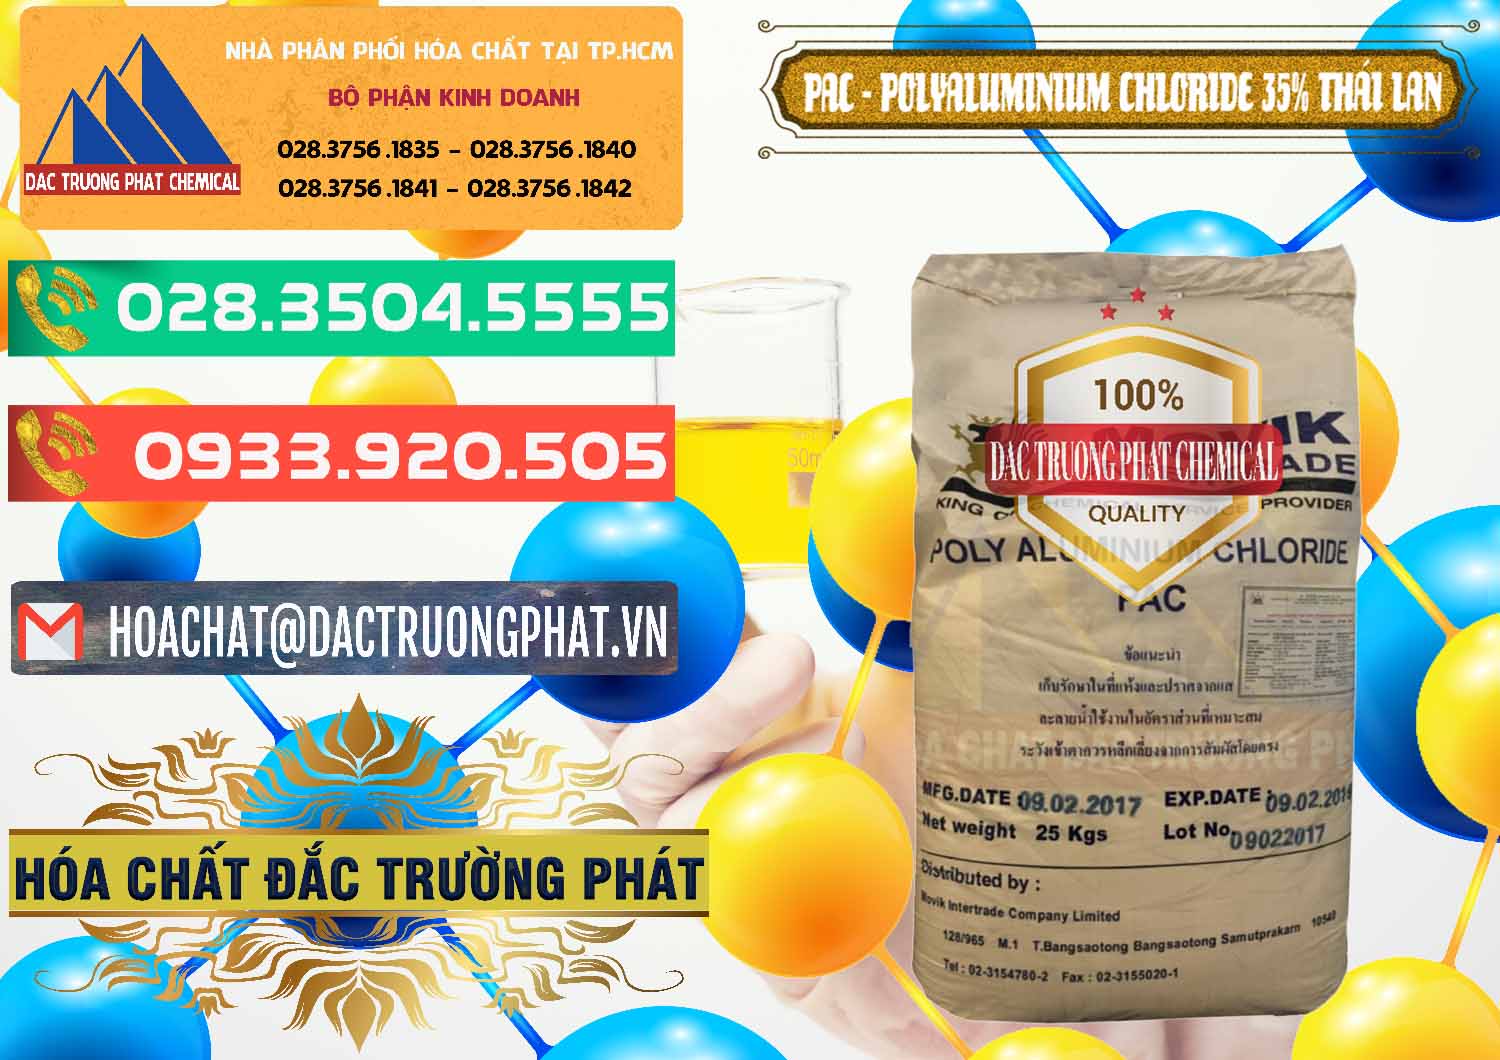 Nơi chuyên nhập khẩu - bán PAC - Polyaluminium Chloride 35% Thái Lan Thailand - 0470 - Đơn vị kinh doanh và cung cấp hóa chất tại TP.HCM - congtyhoachat.com.vn